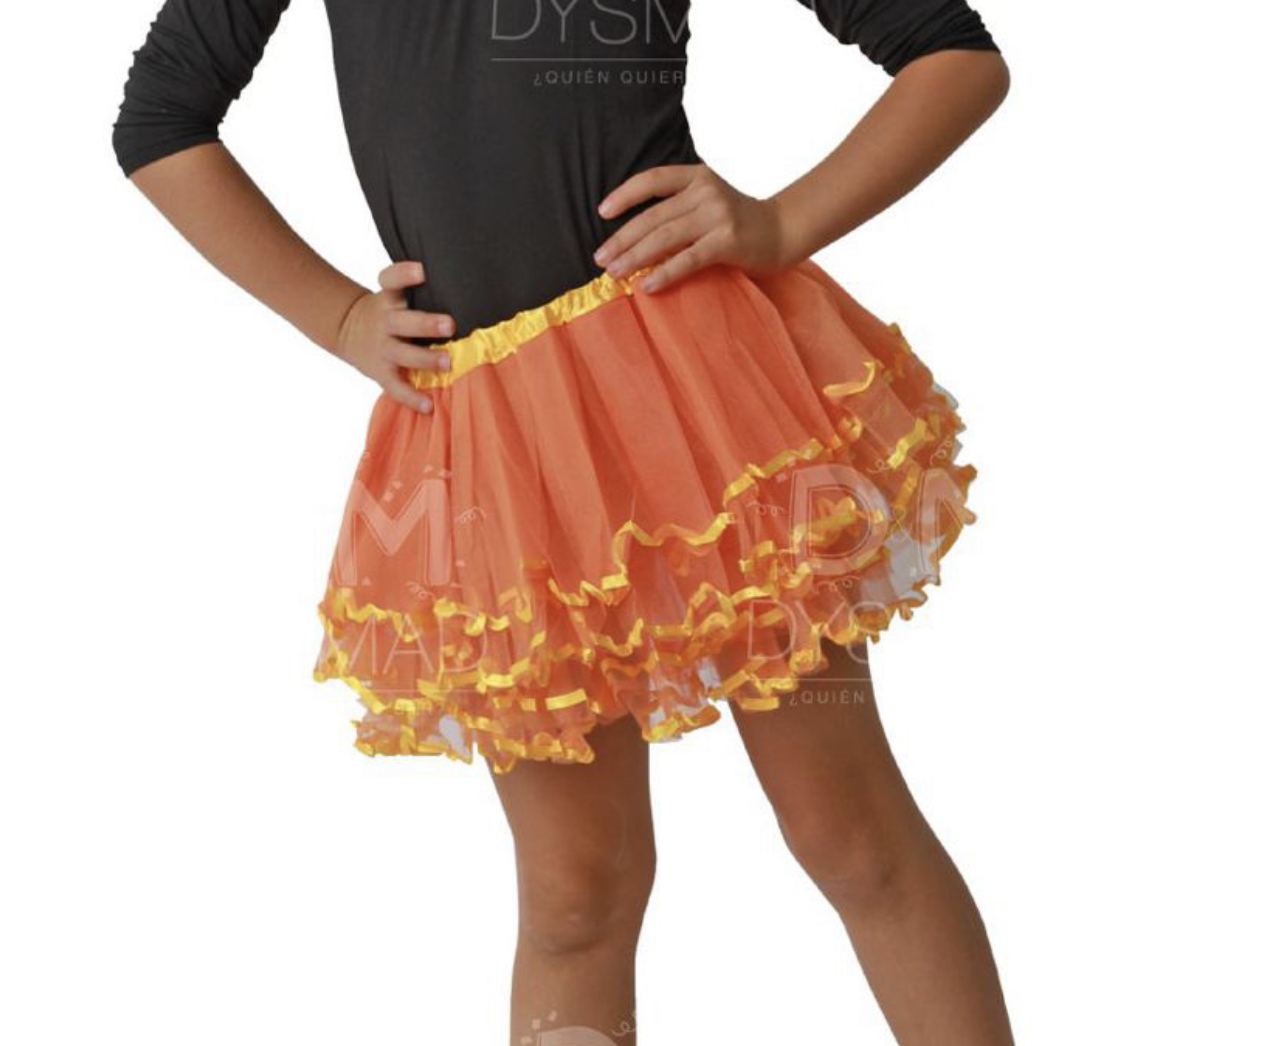 Tutú para Ballet y Danza - Falda de Tul para Mujer Color Naranja